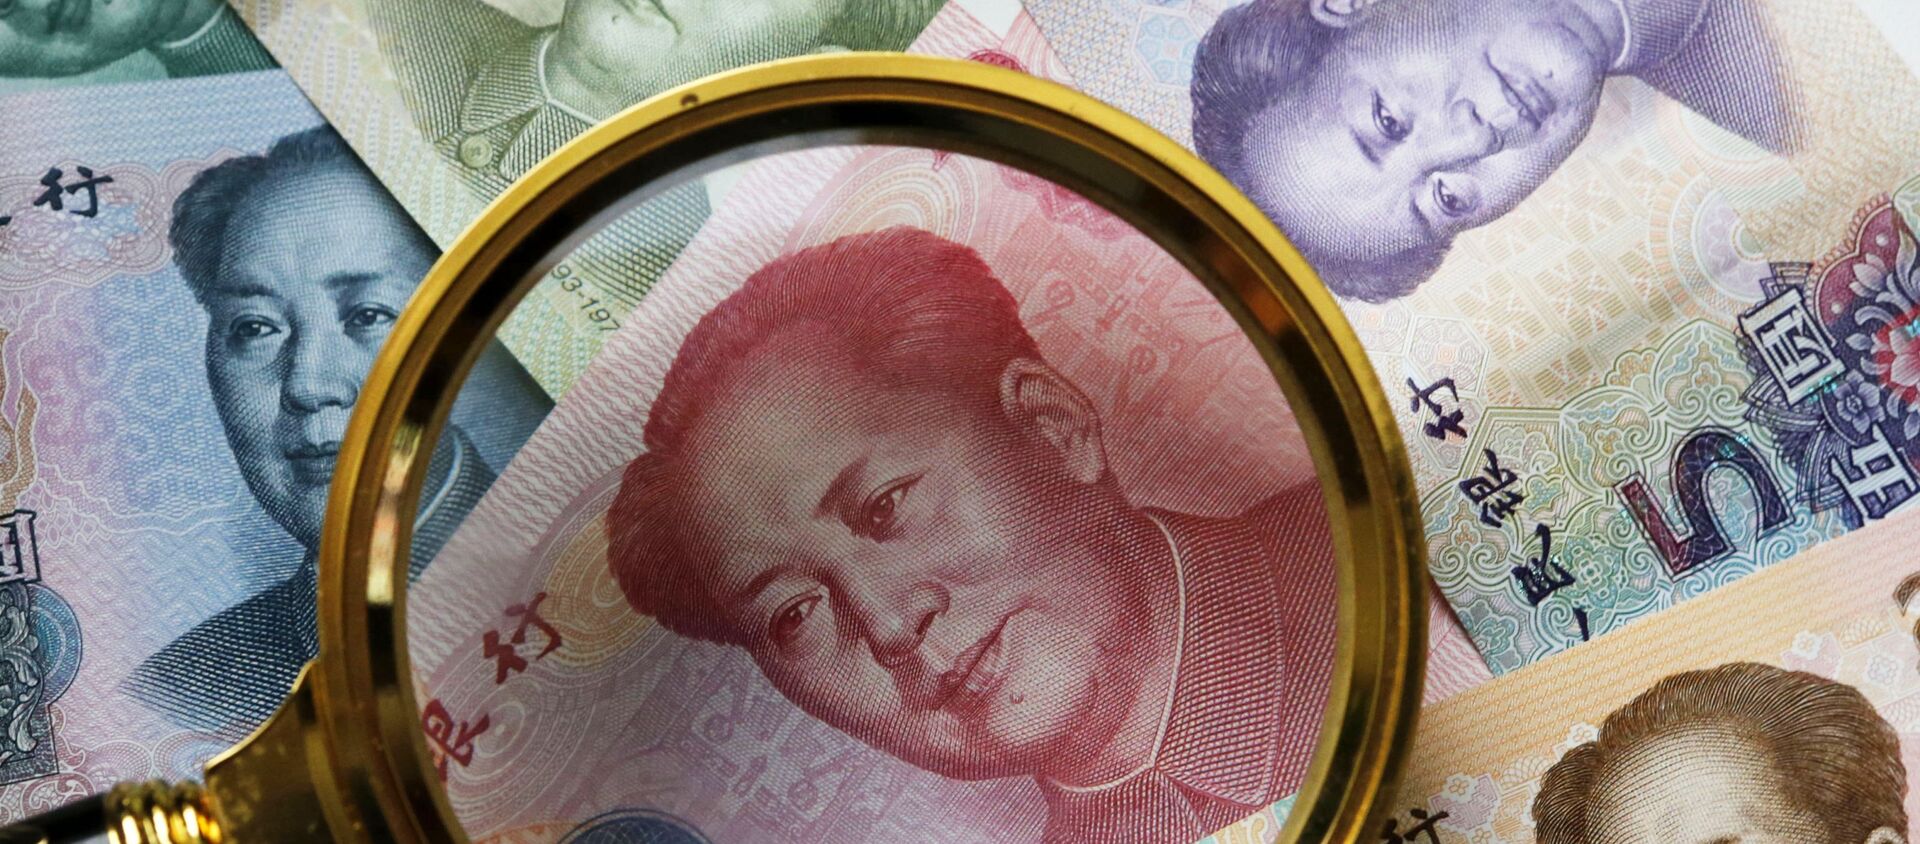 Китайские банкноты номиналом в 100, 50, 20,10 и 5 юаней. - Sputnik Ўзбекистон, 1920, 05.05.2020